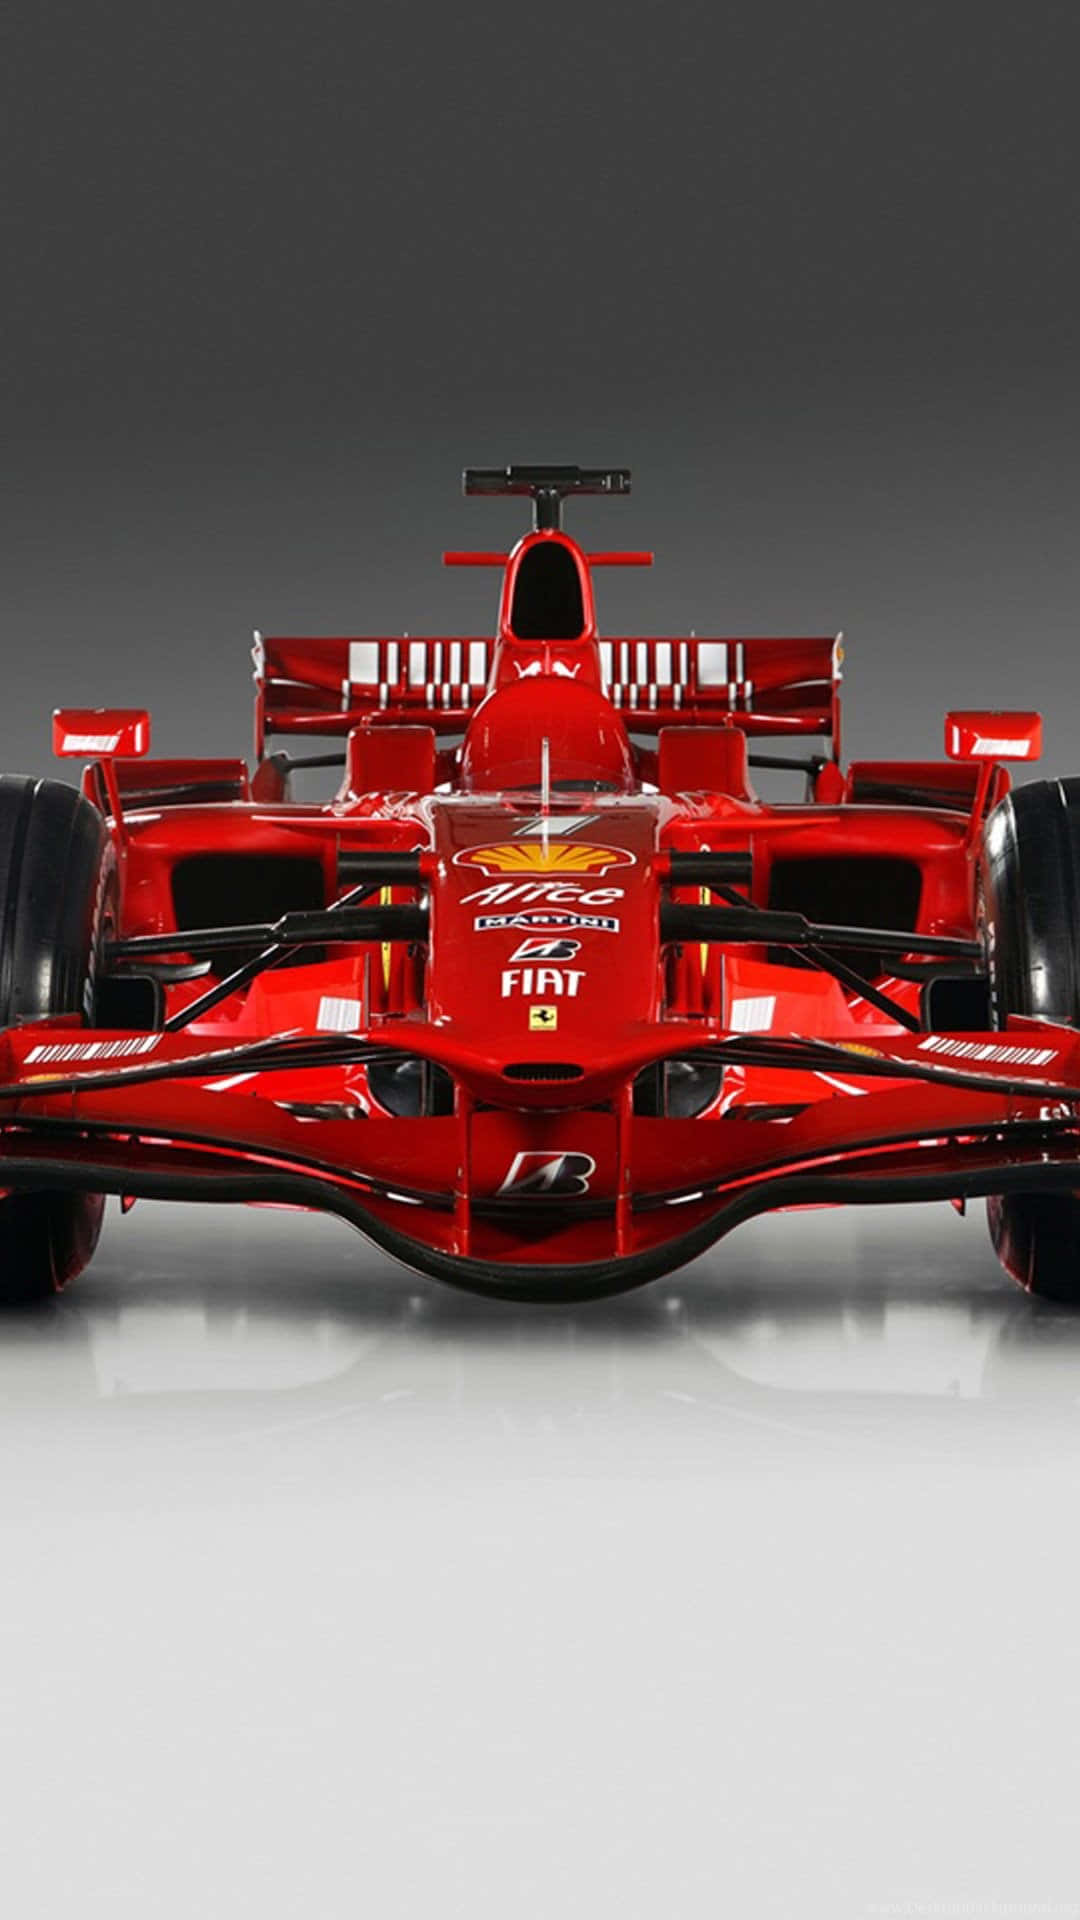 Ferrari F1 Racing Car Front View Wallpaper